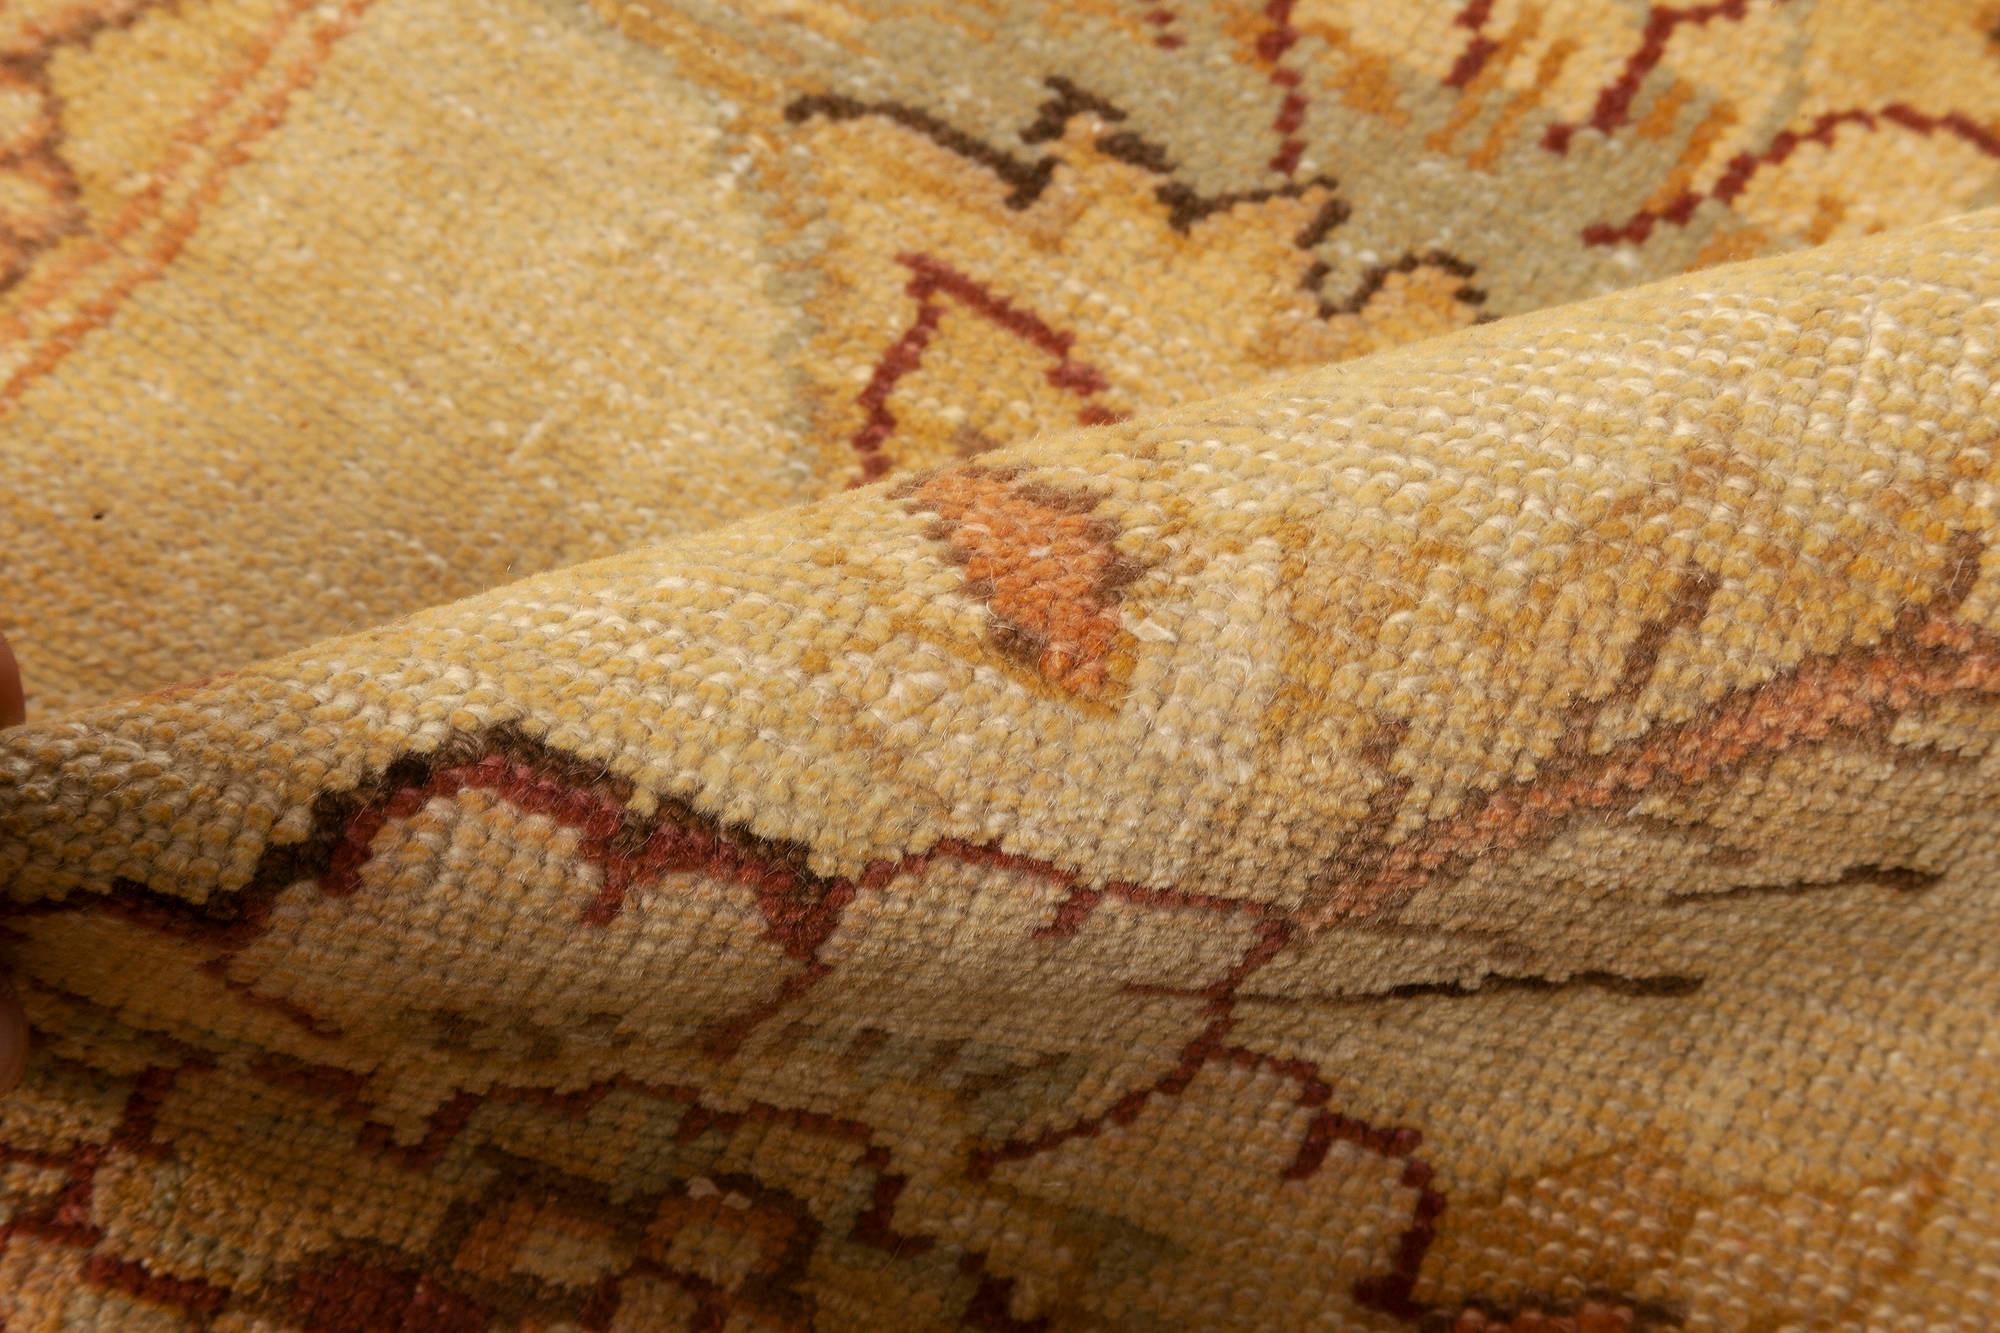 Zeitgenössischer, traditionell inspirierter Teppich mit Blumenmuster von Doris Leslie Blau.
Größe: 13,4